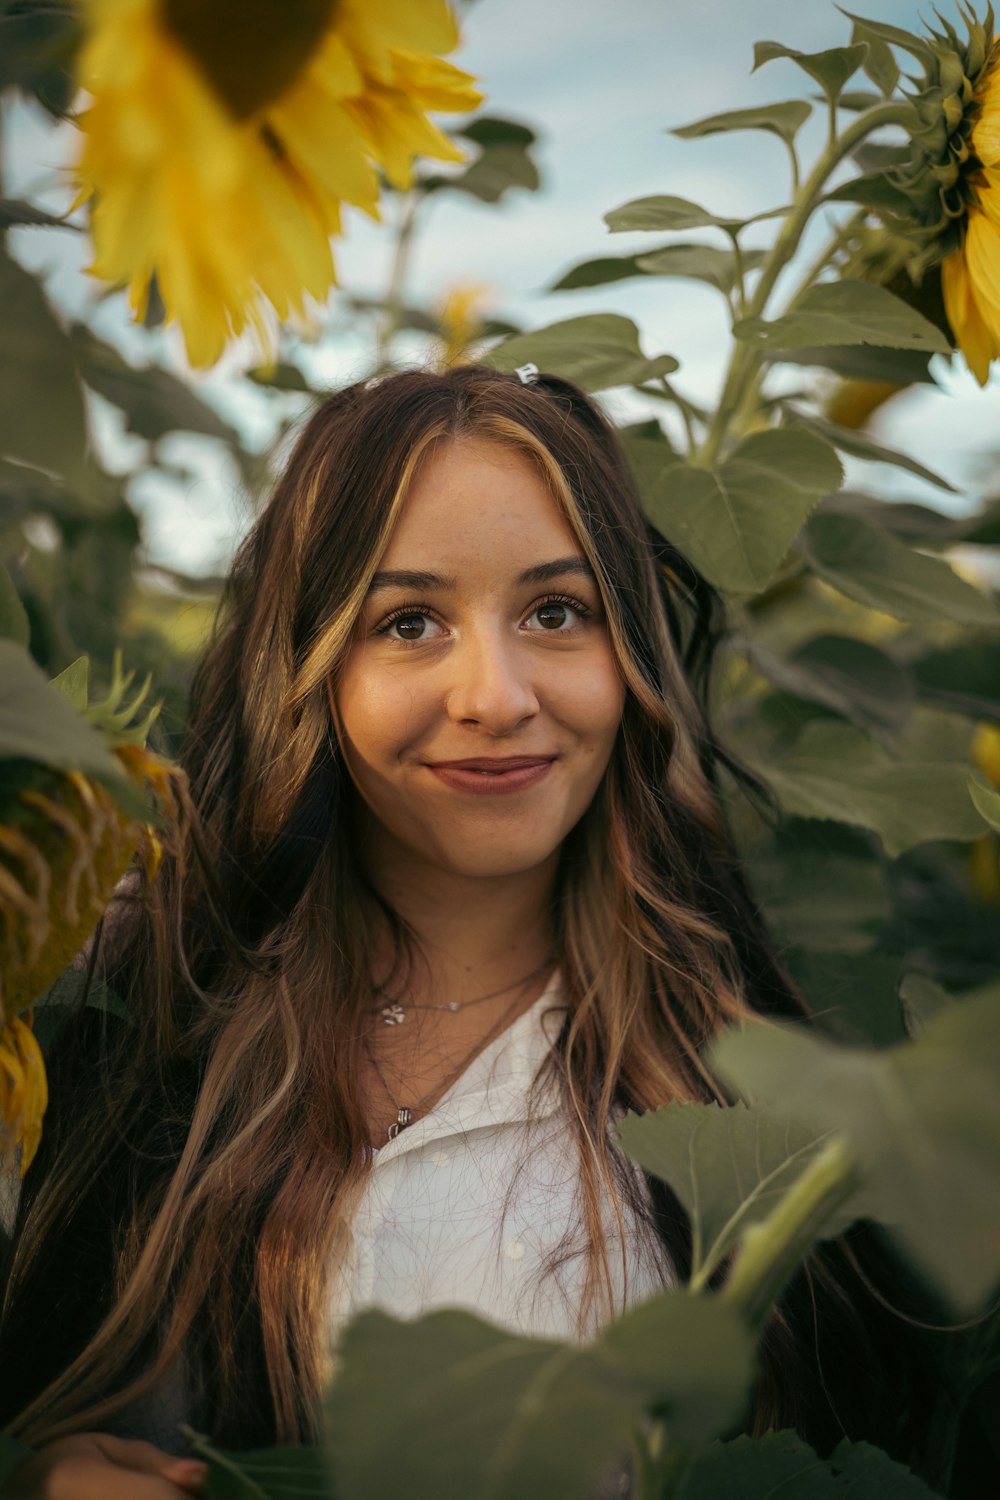 黄色い花を持つ木の前で微笑む女性